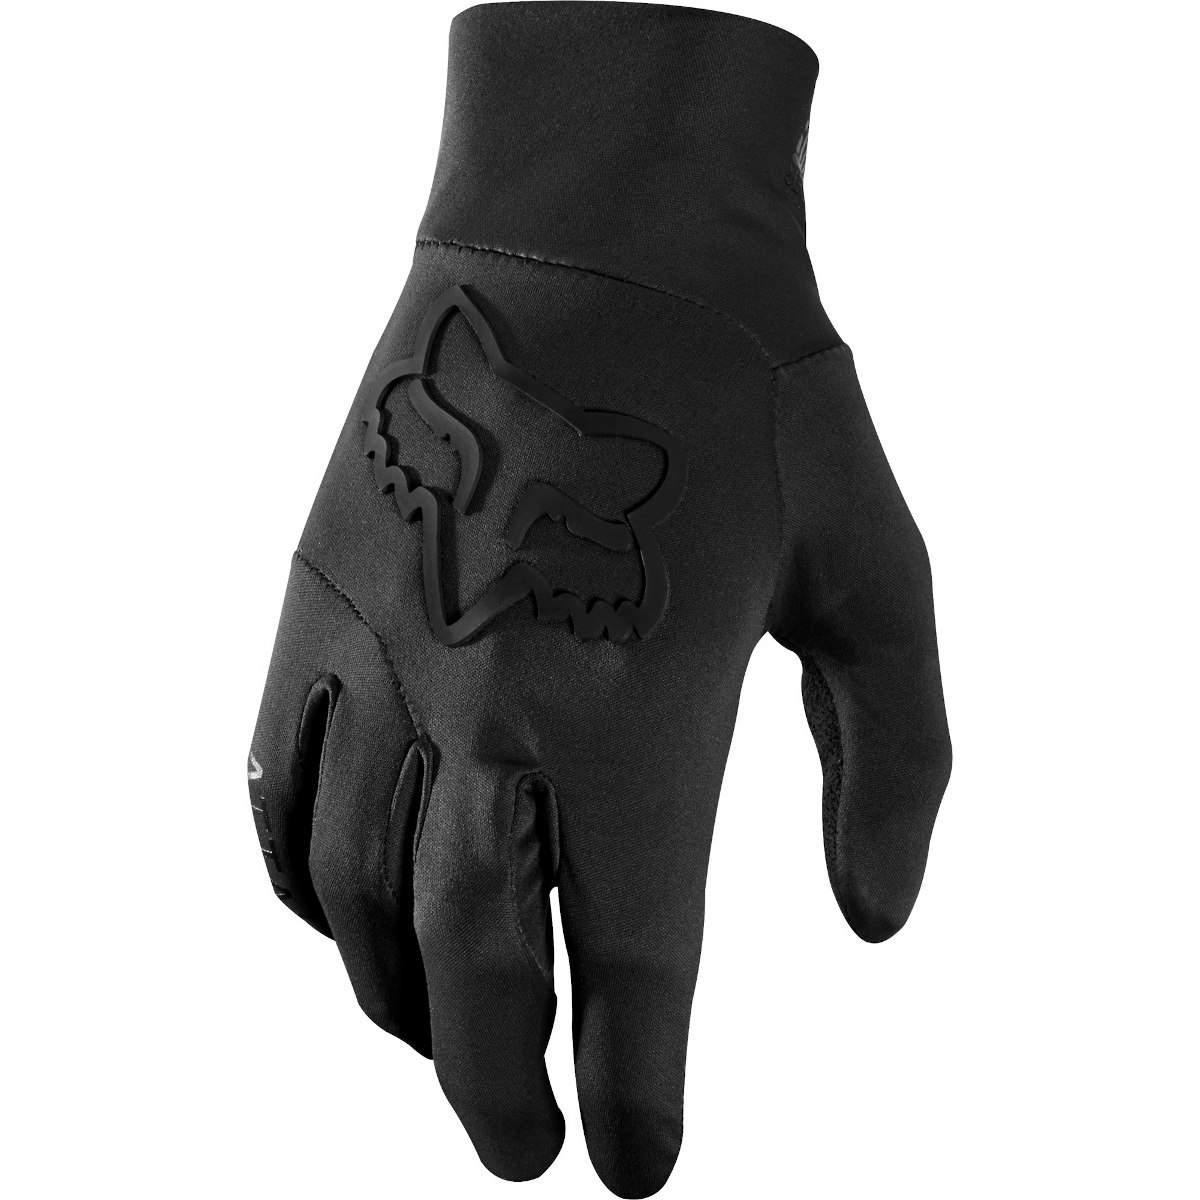 Produktbild von FOX Ranger Water MTB Handschuhe - black/black